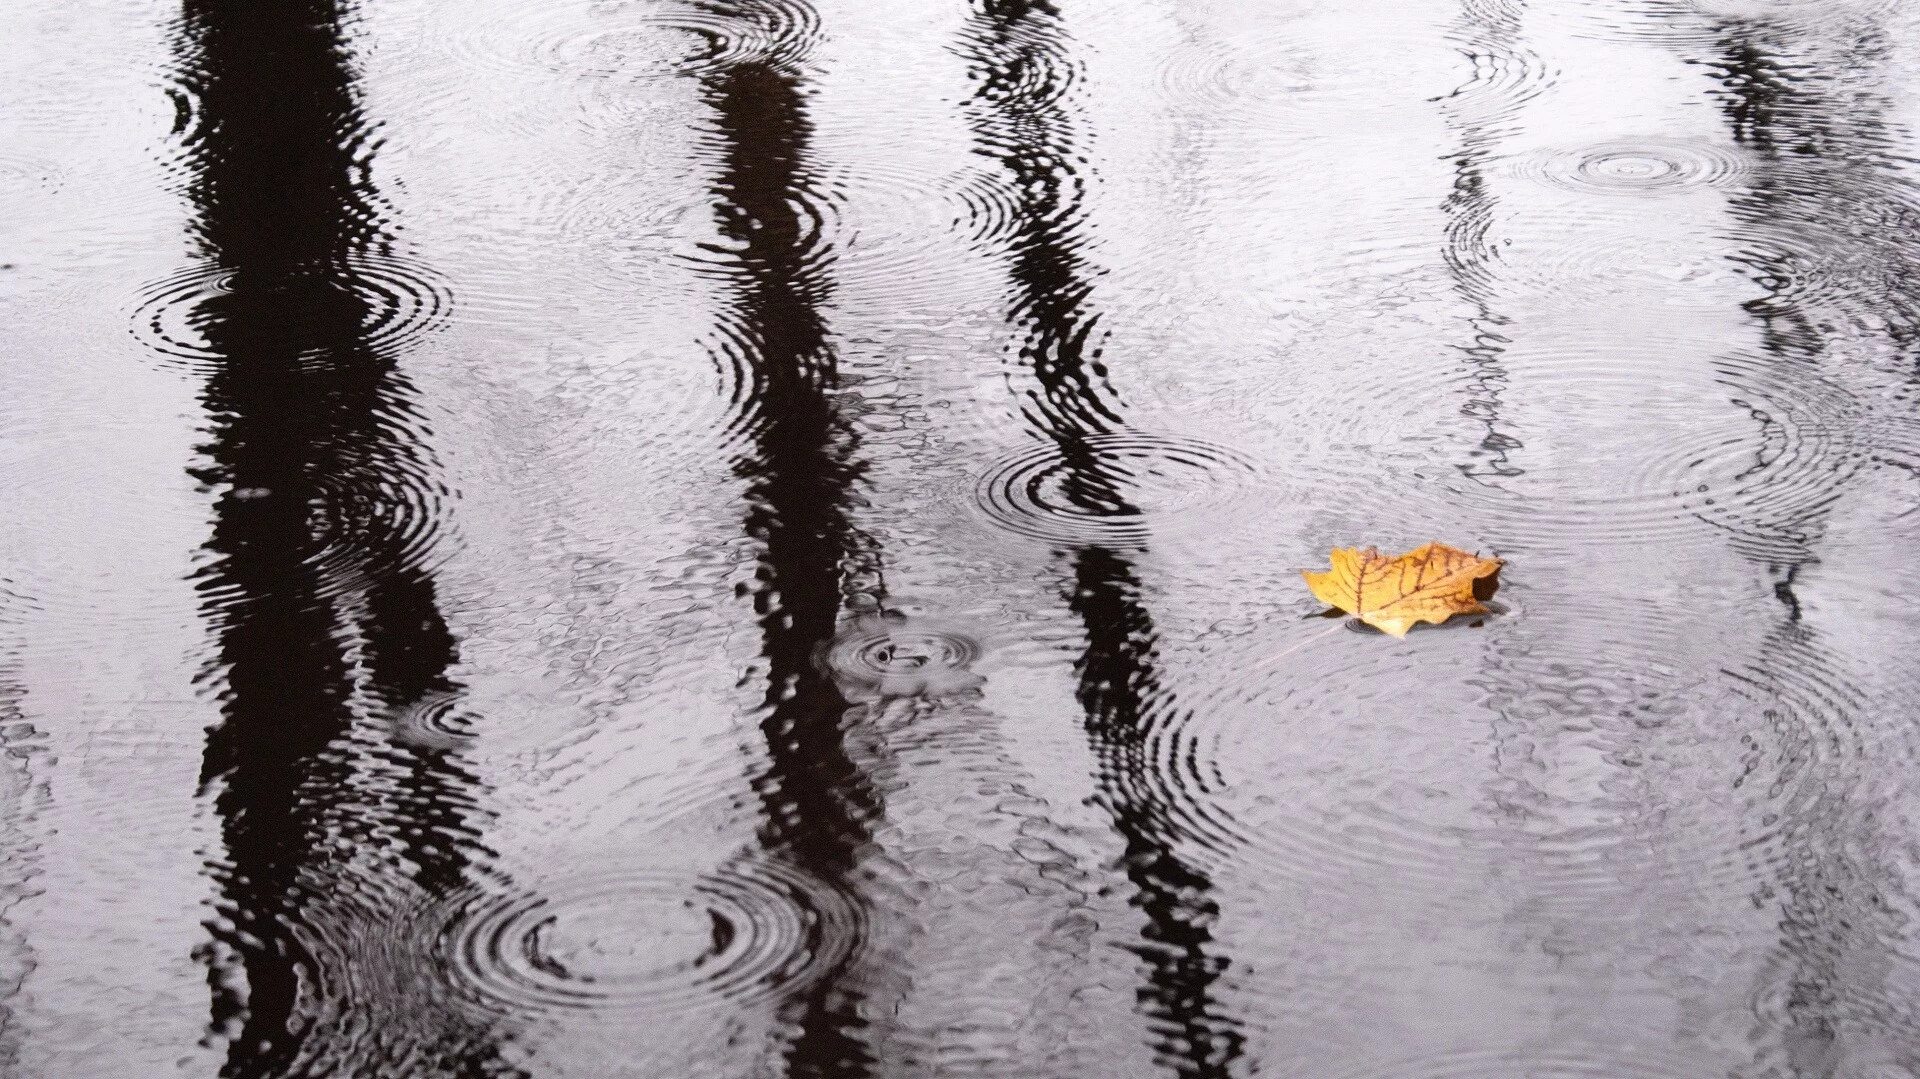 Дождь на воде. Дождь отражение. Отражение листа в воде. Отражение на воде в дождь.